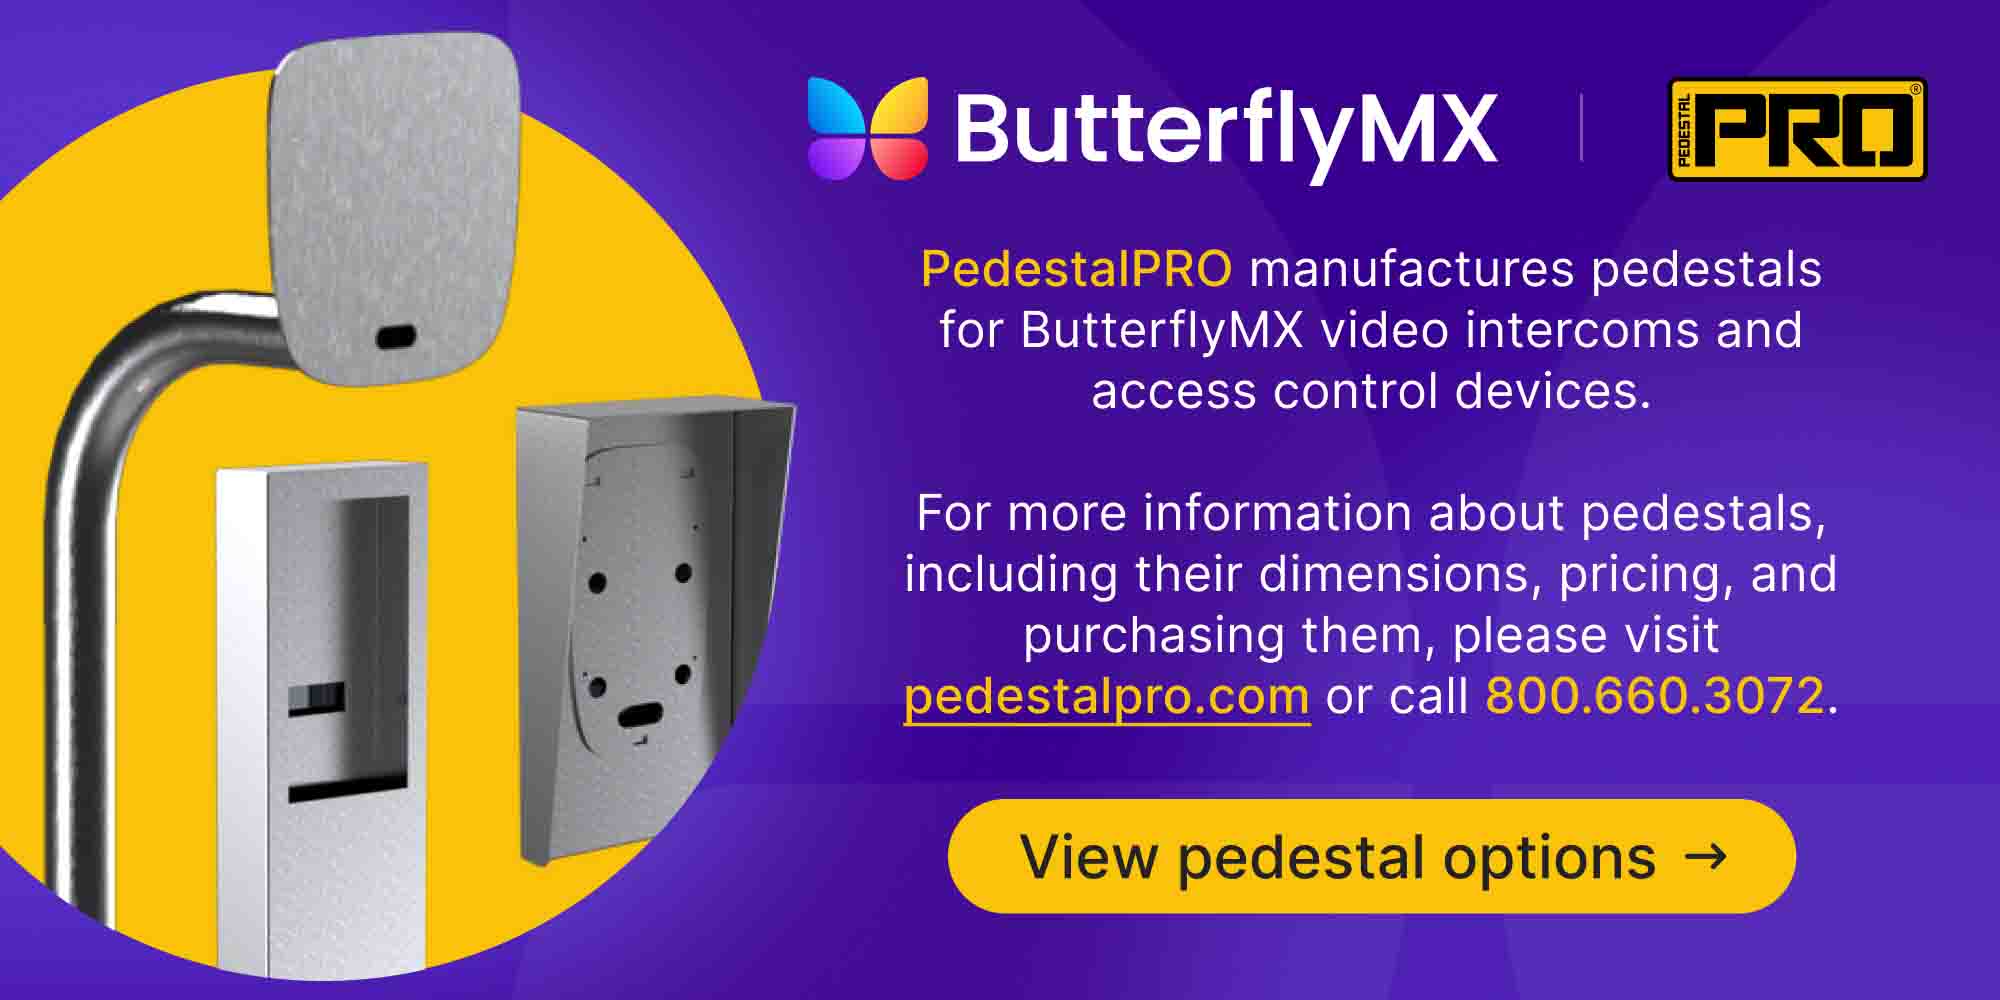 ButterflyMX pedestals